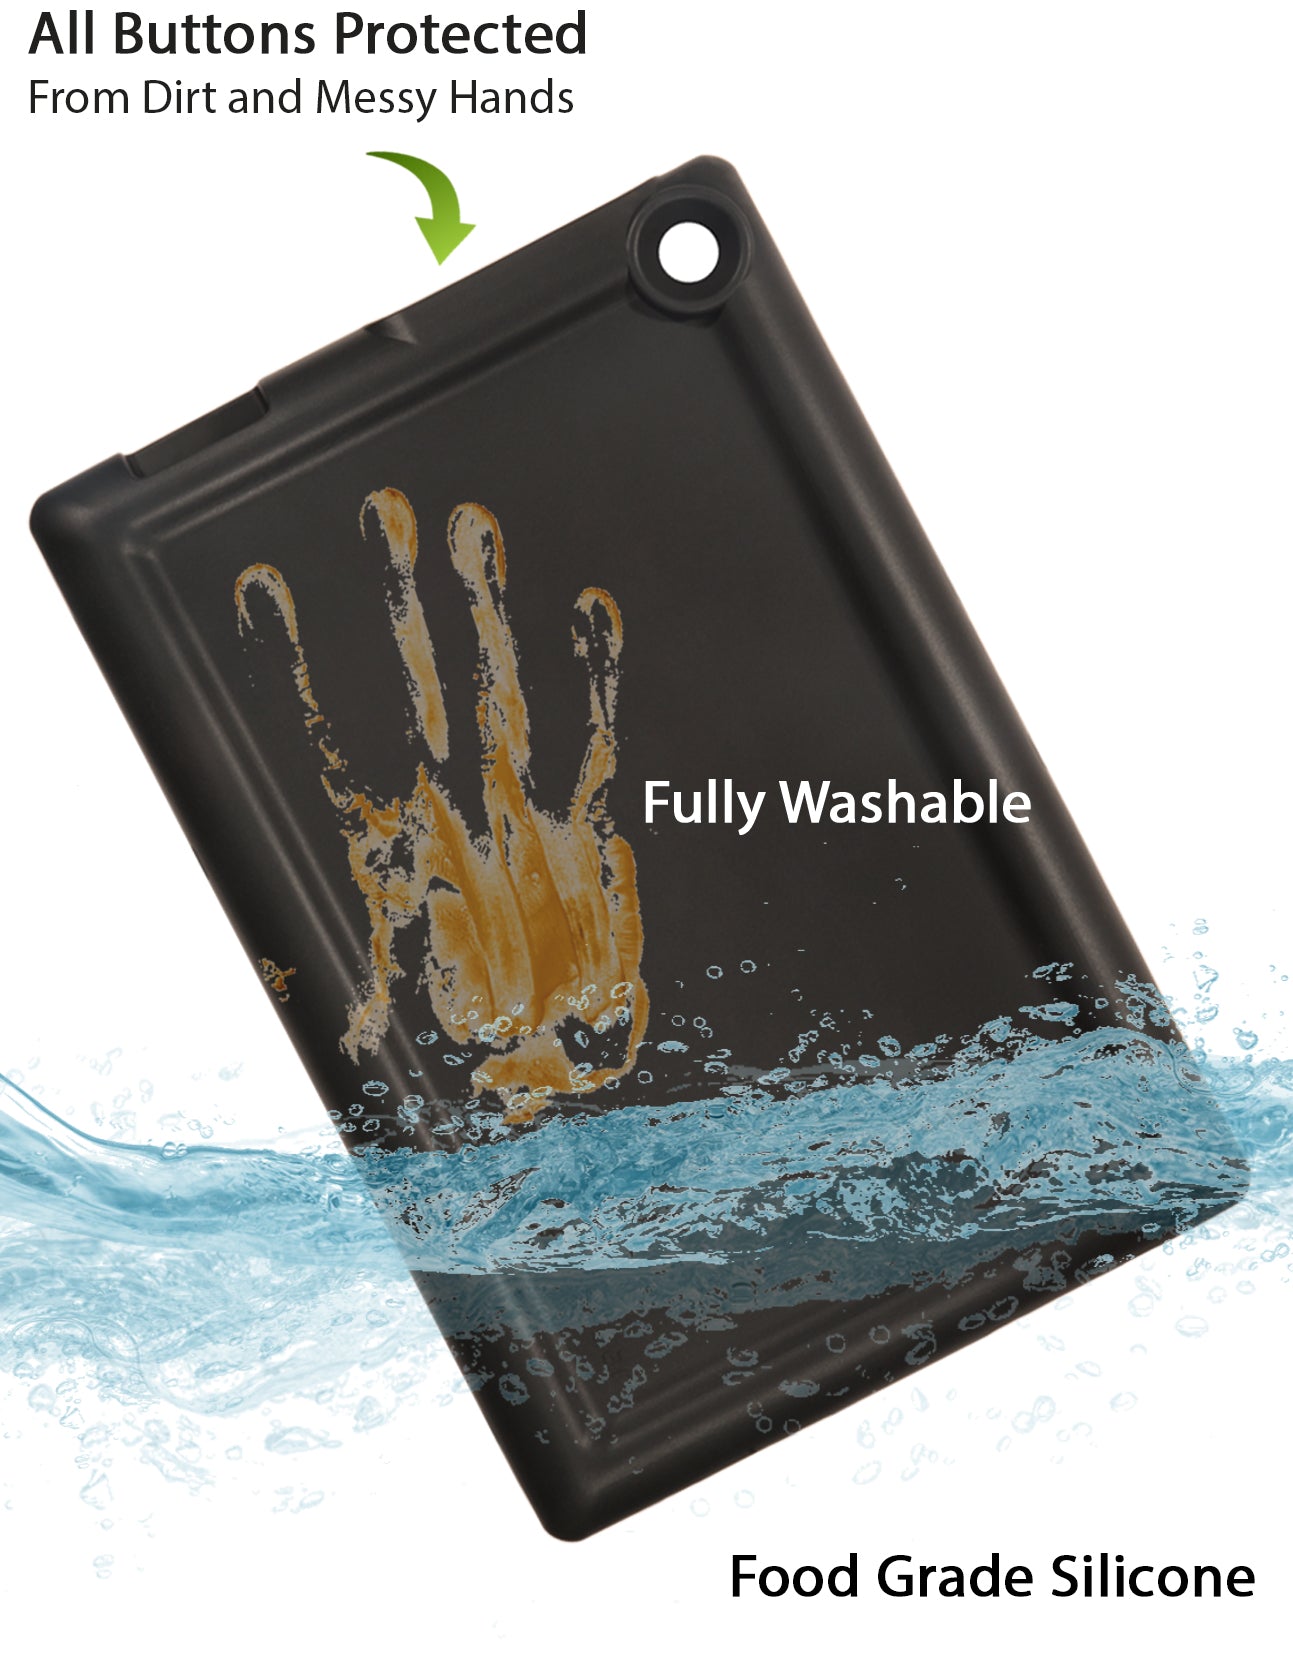 Bobj Rugged Tablet Case for Lenovo 10e Chromebook Tablet model 82AM - Bold Black